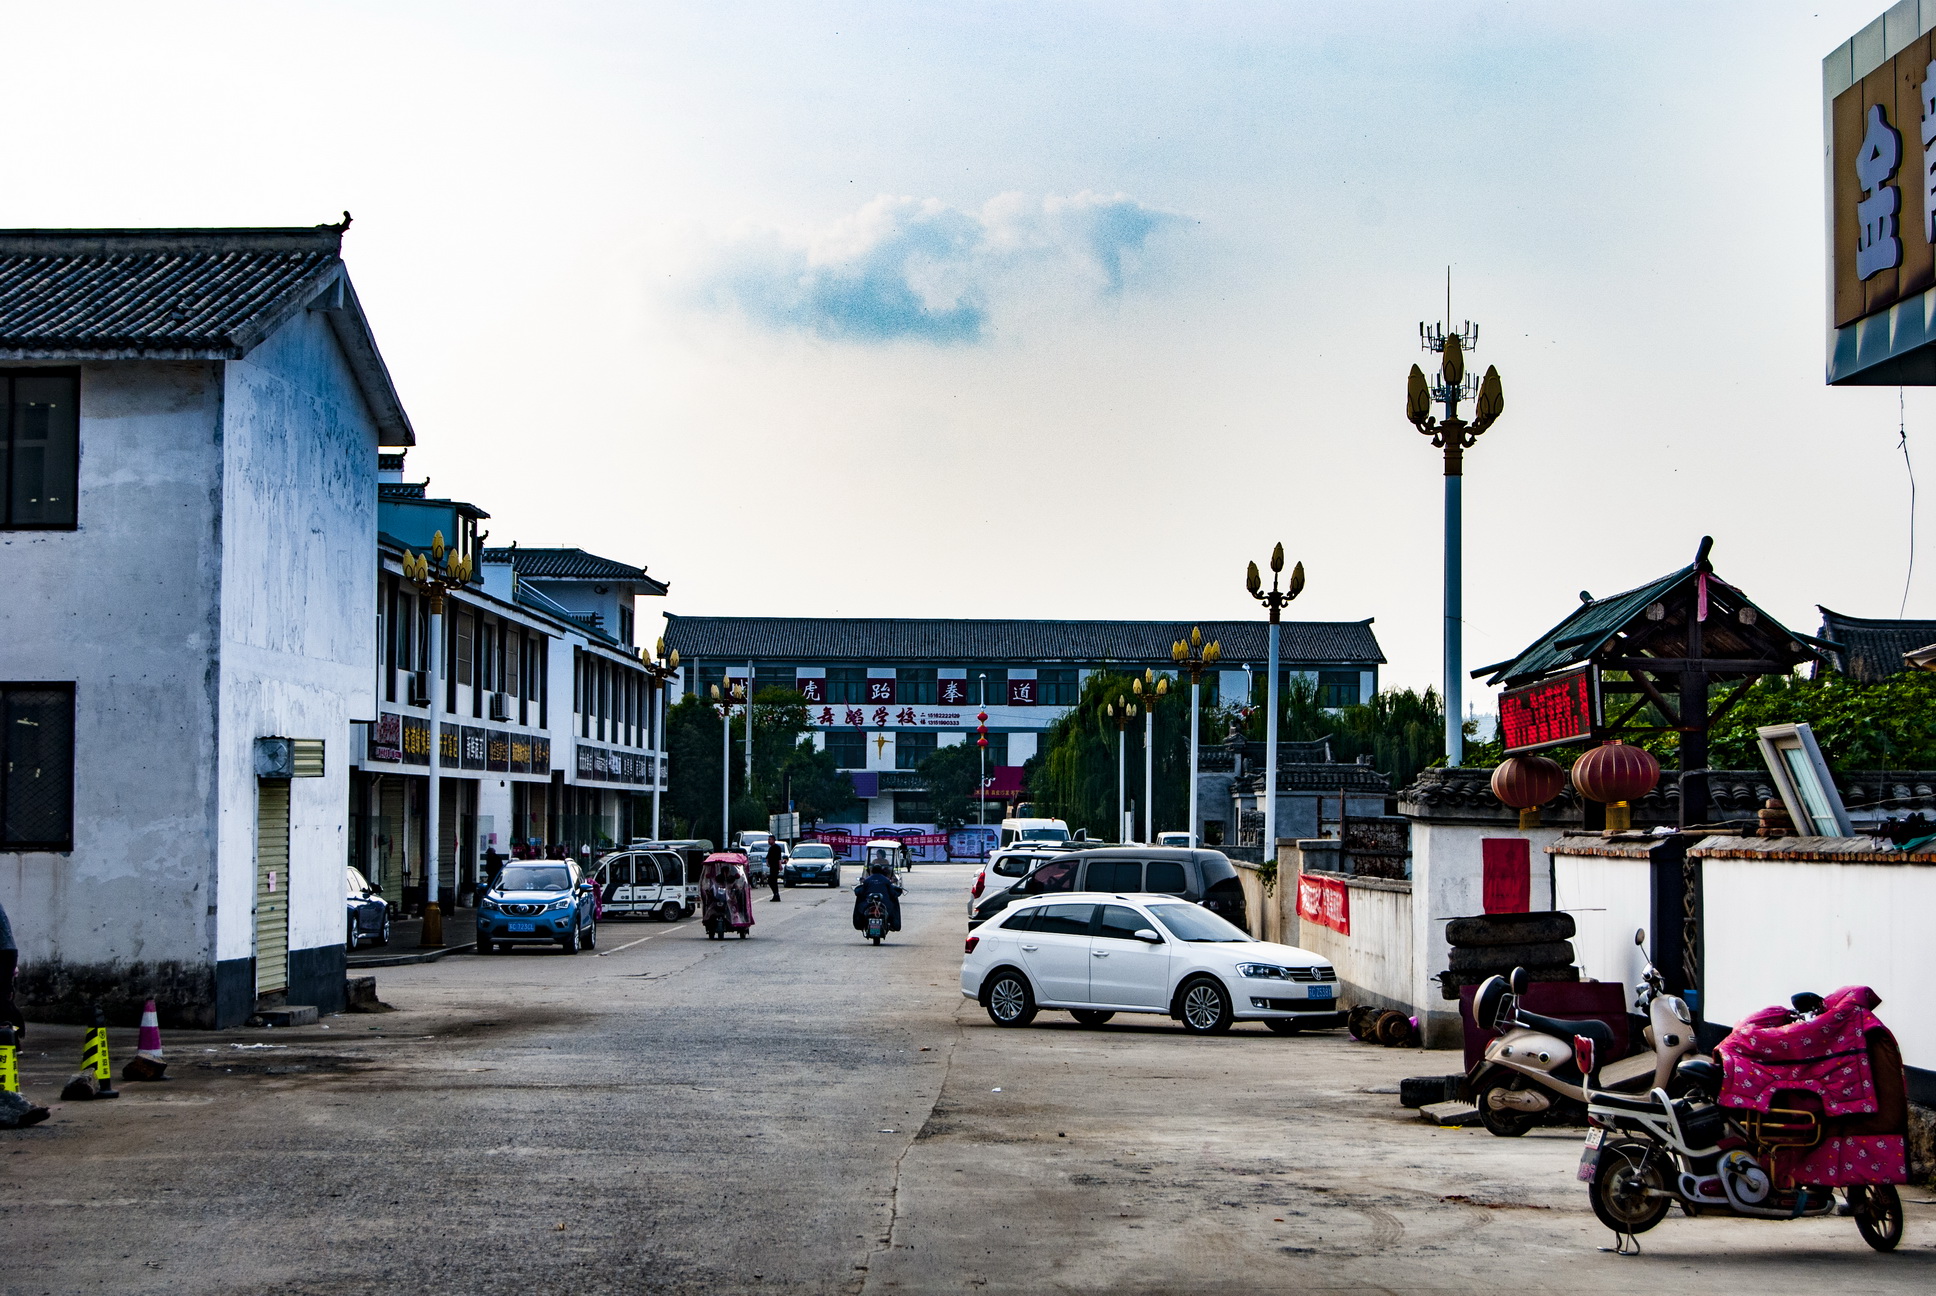 1/ 12 丁塘村位于汉王镇东南不到一公里的地方,随着汉王镇经济高速